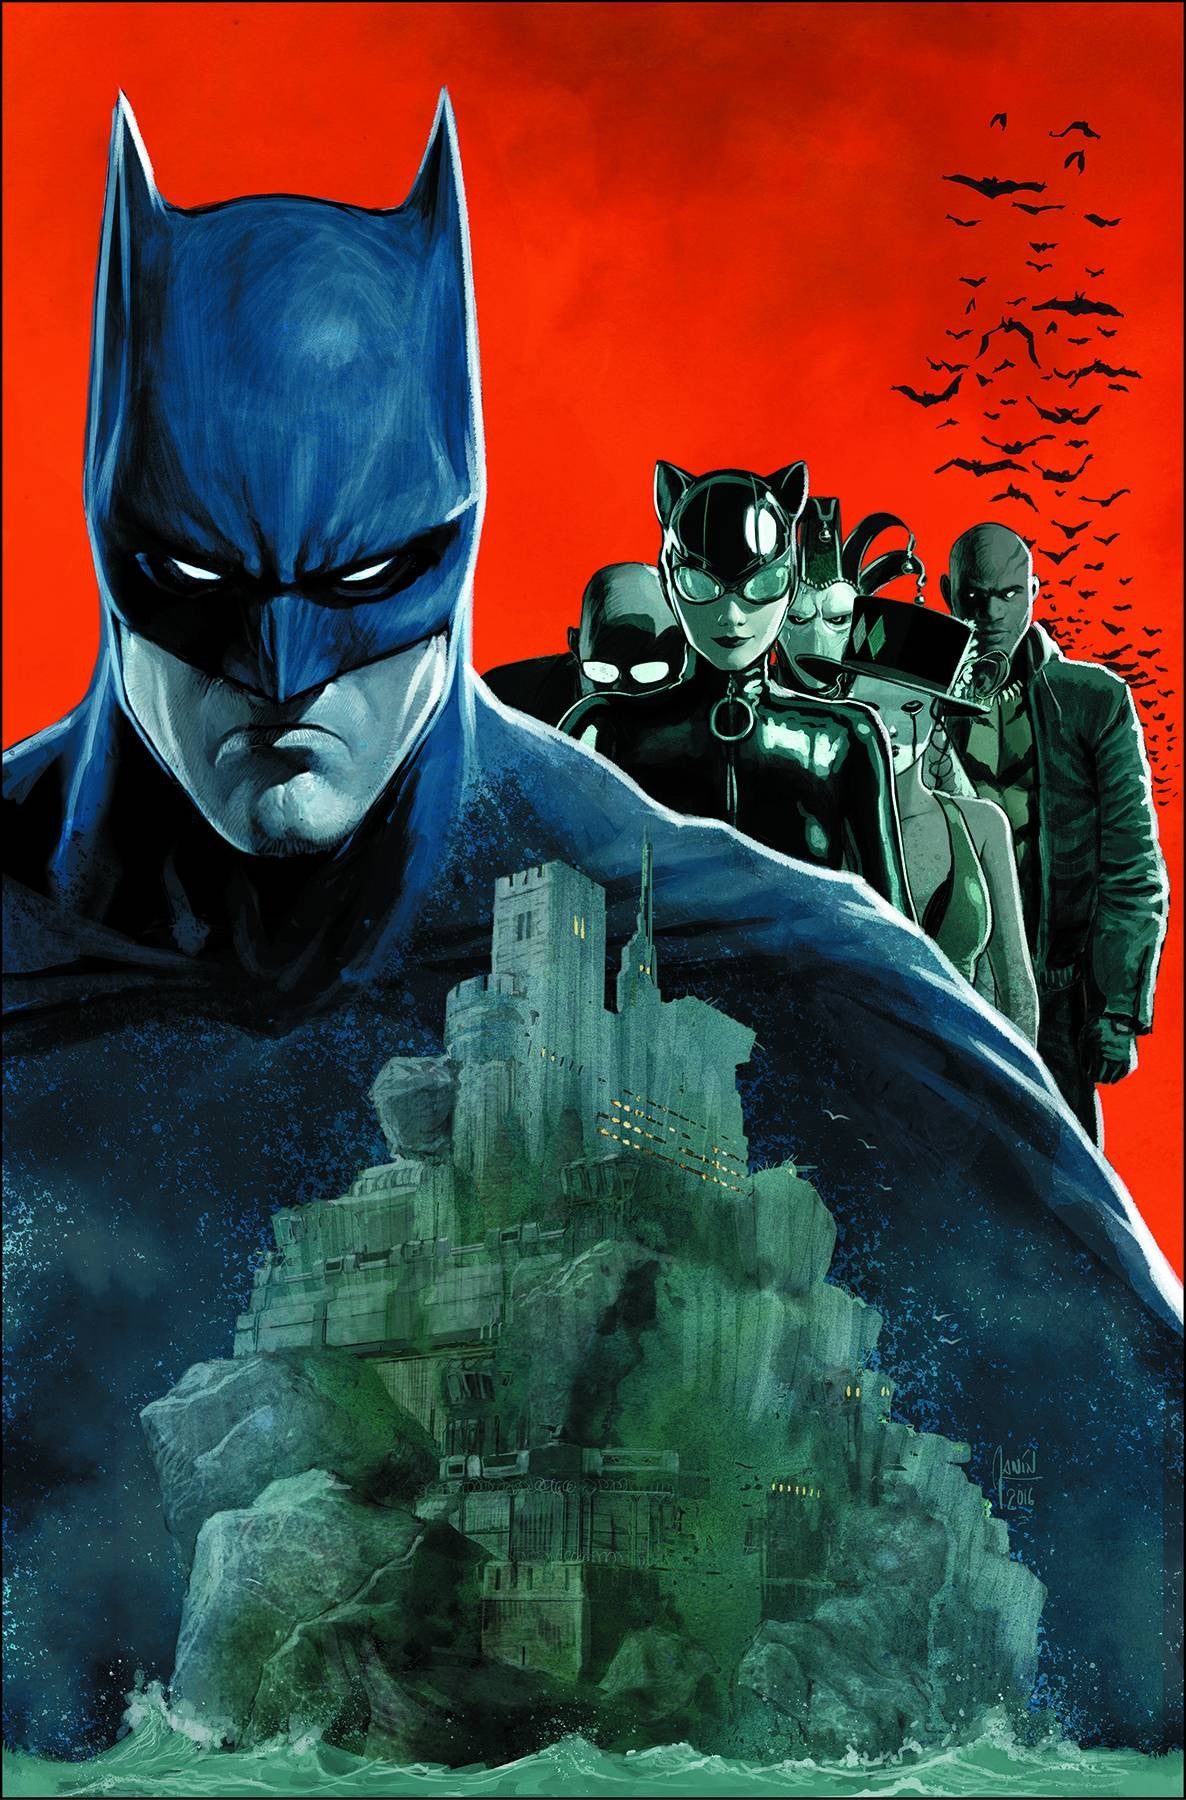 BATMAN #10 COVER